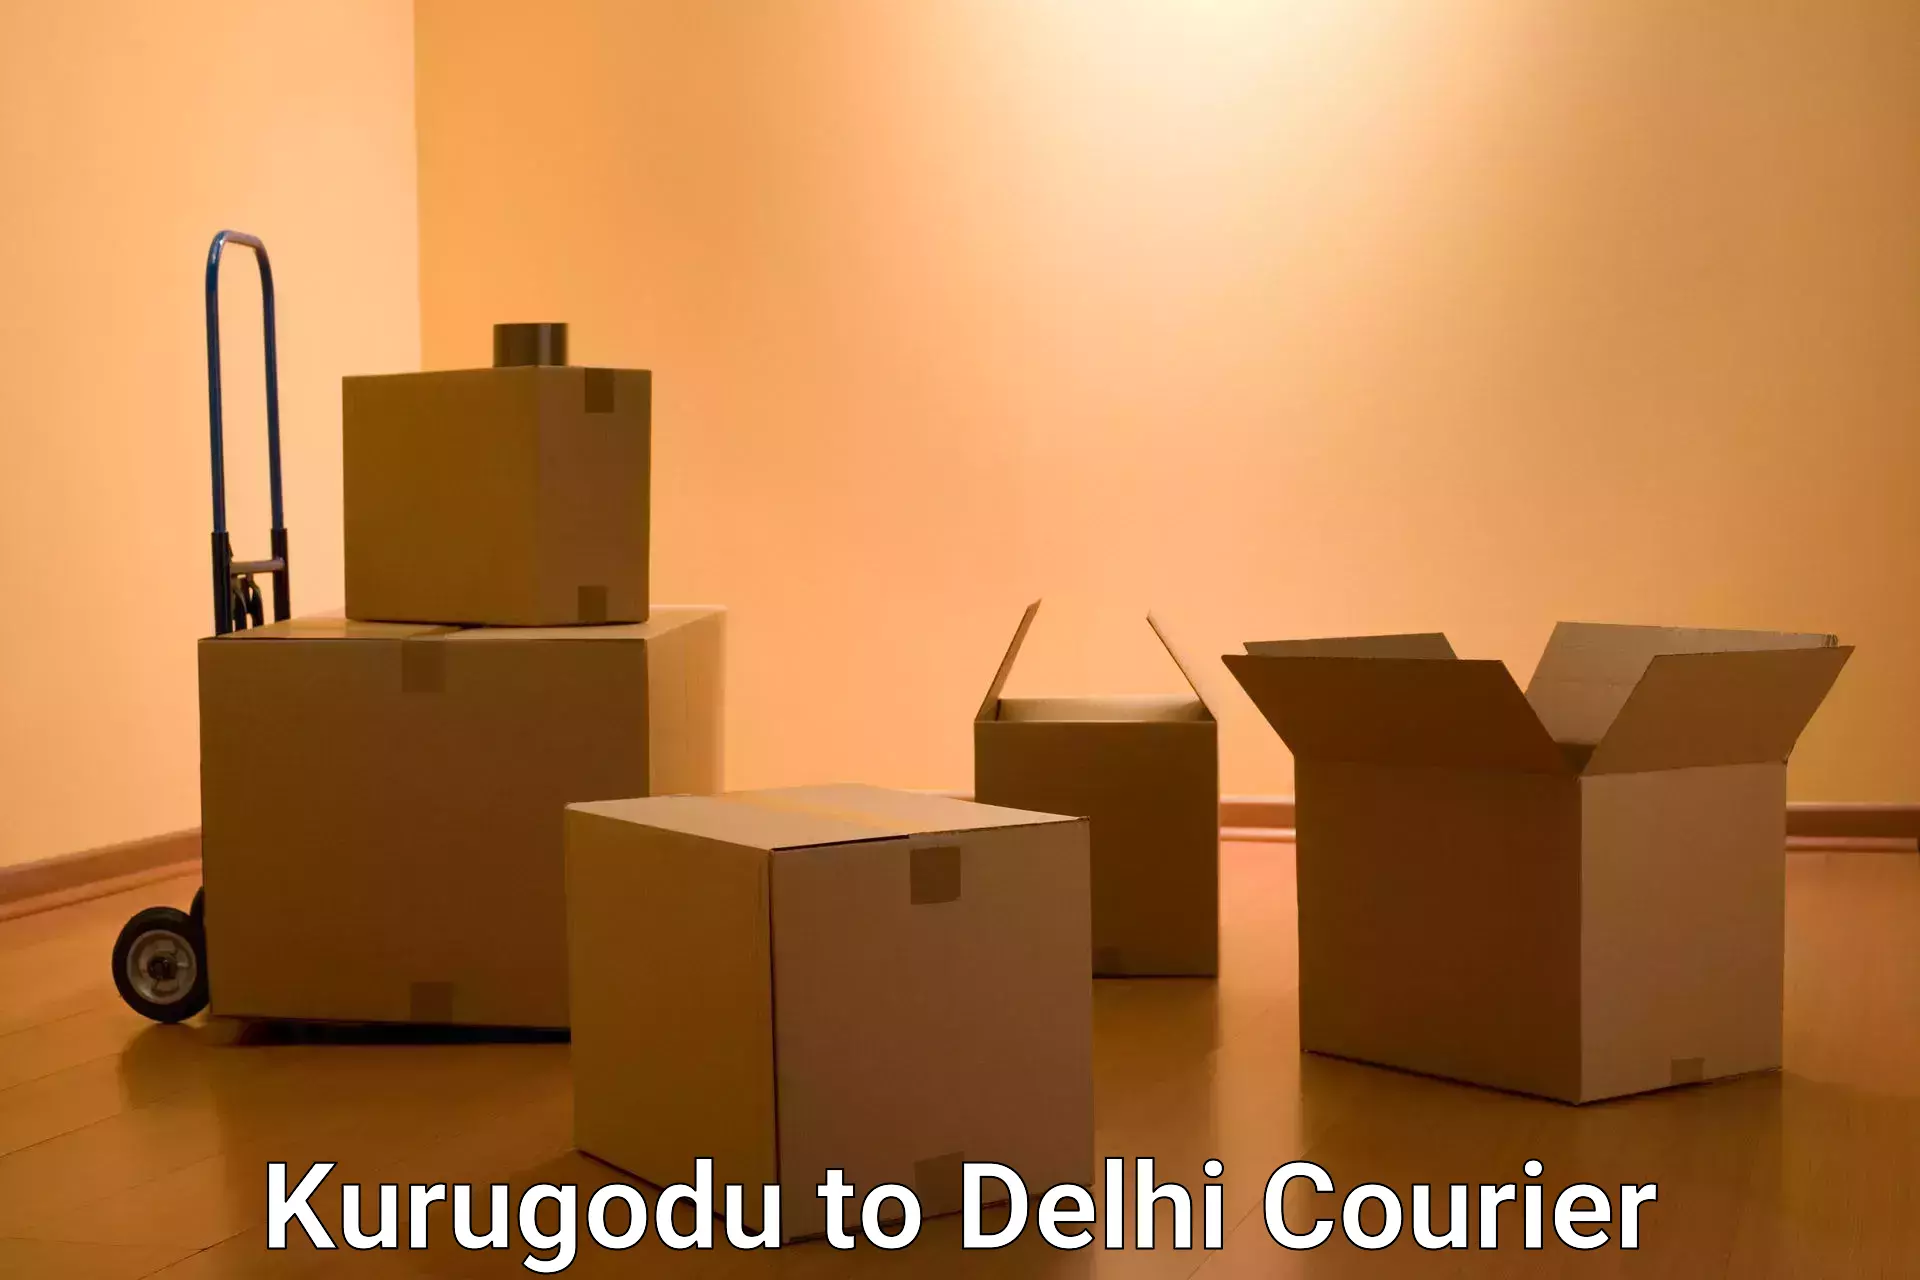 Urban courier service Kurugodu to Jawaharlal Nehru University New Delhi